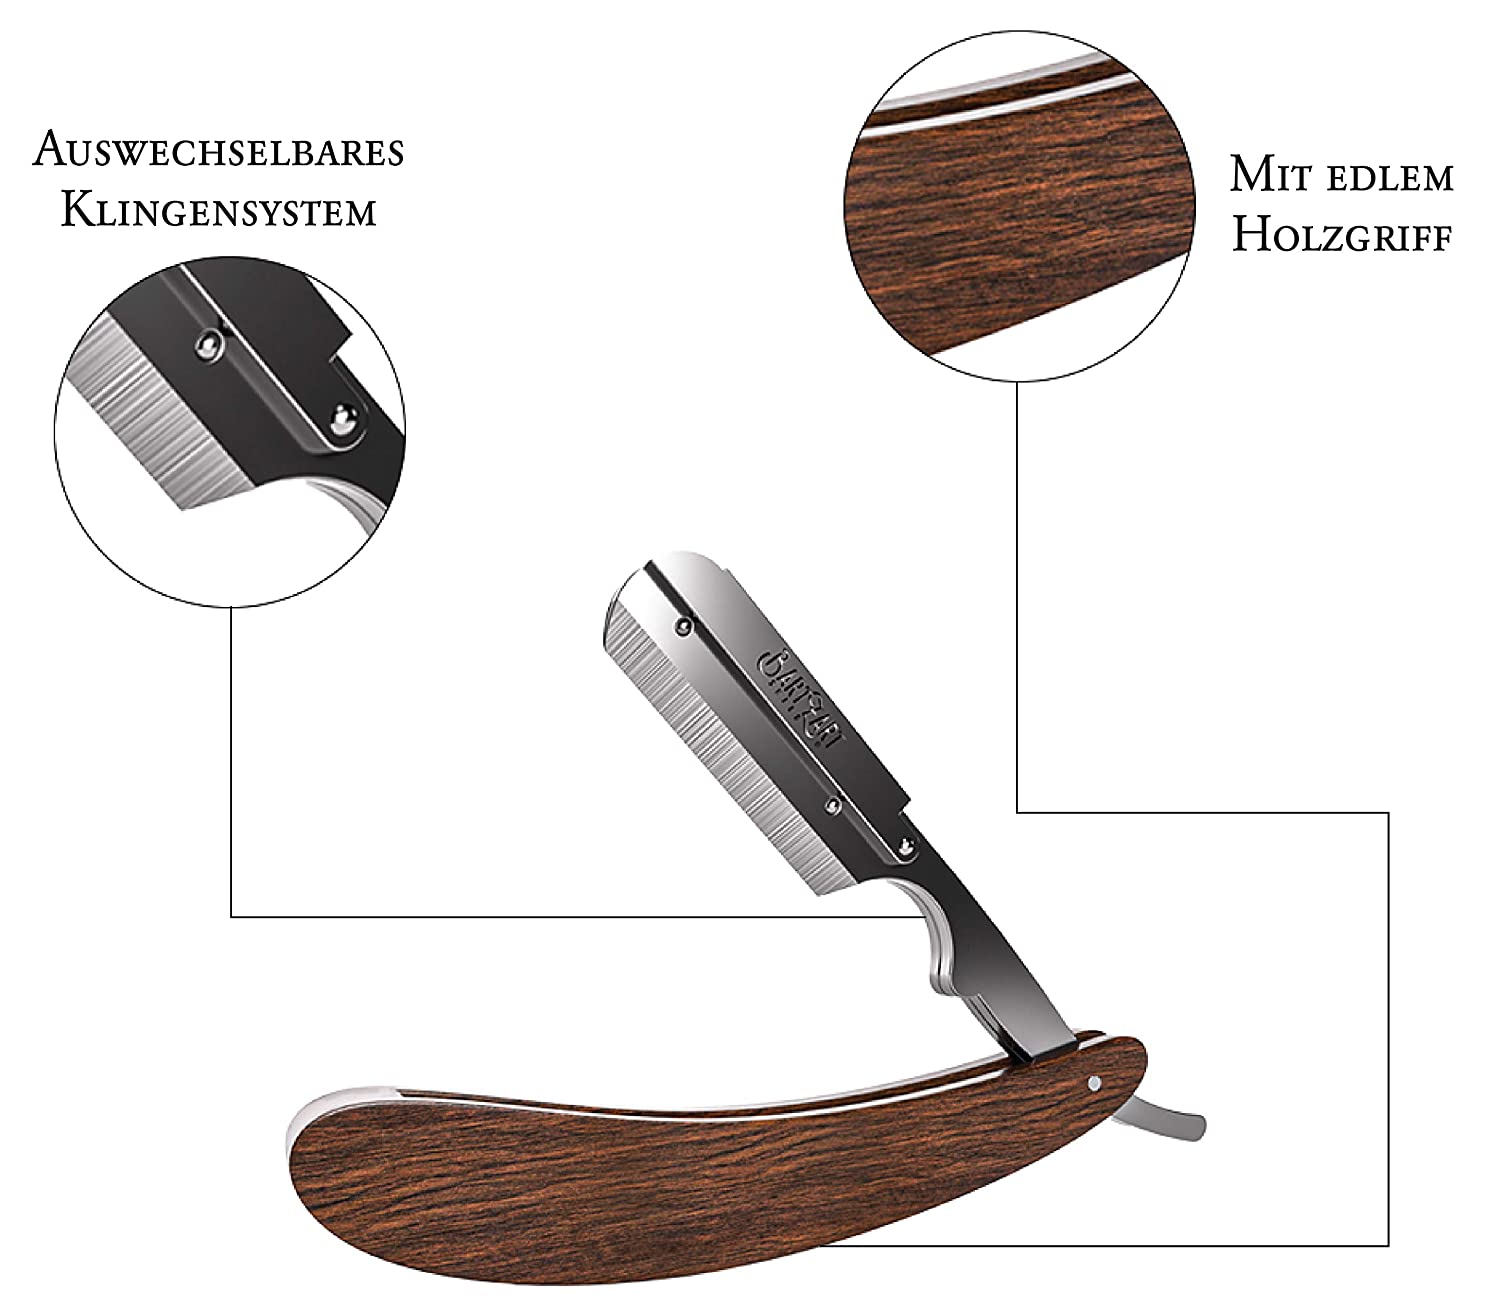 Rasiermesser Set mit Holzgriff inkl. Rasierklingen v. Derby - Shabo Cosmetics GmbH